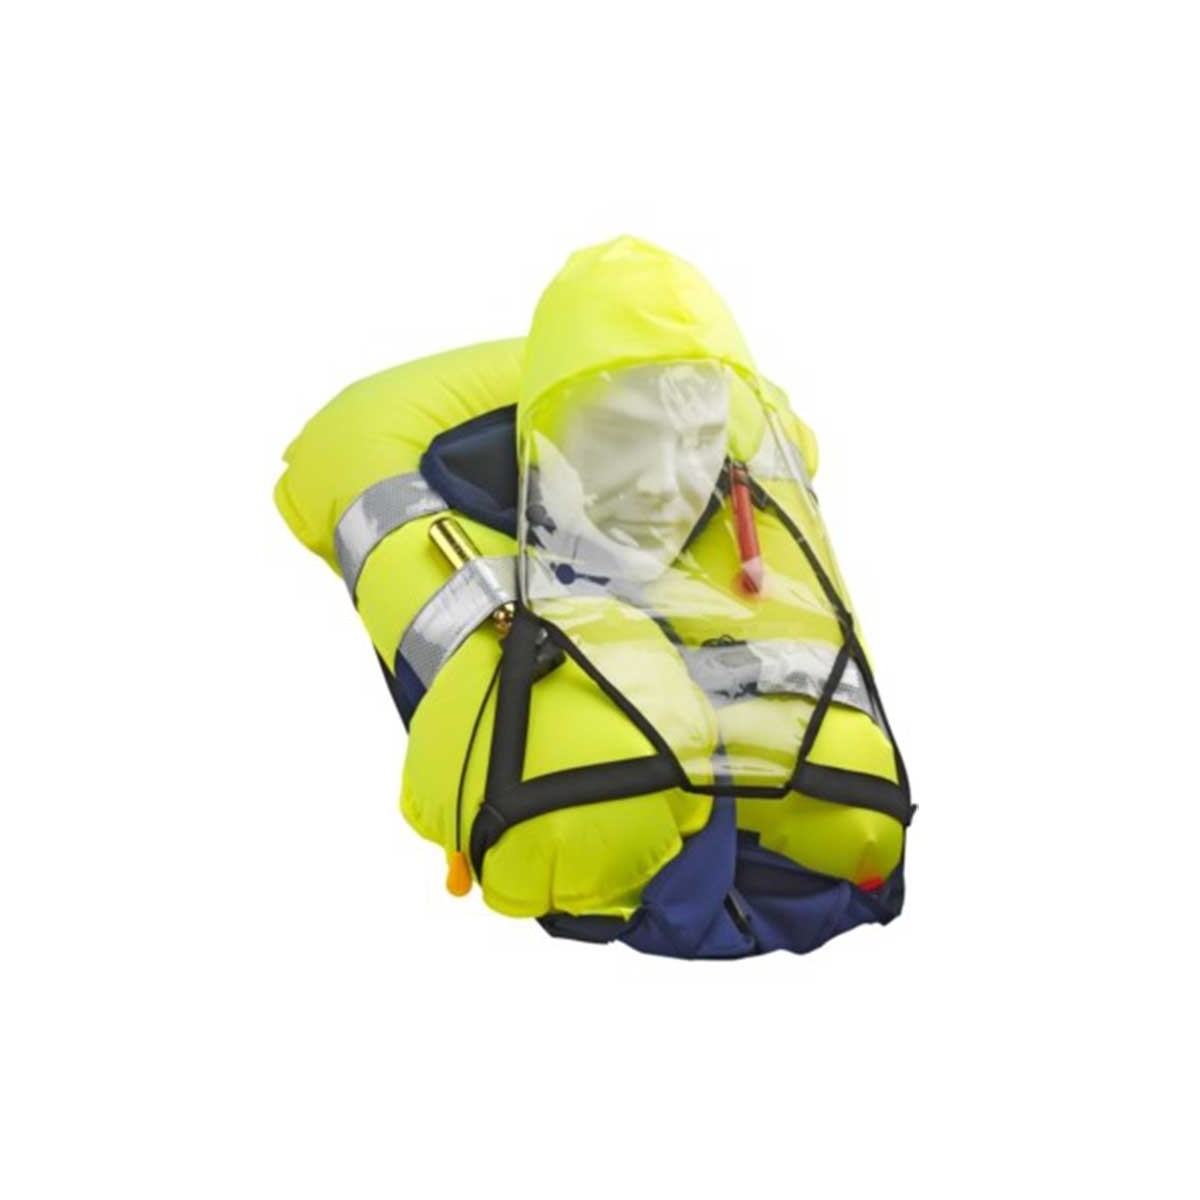 Masque de protection pour gilets de sauvetage gonflables SOLAS Plastimo